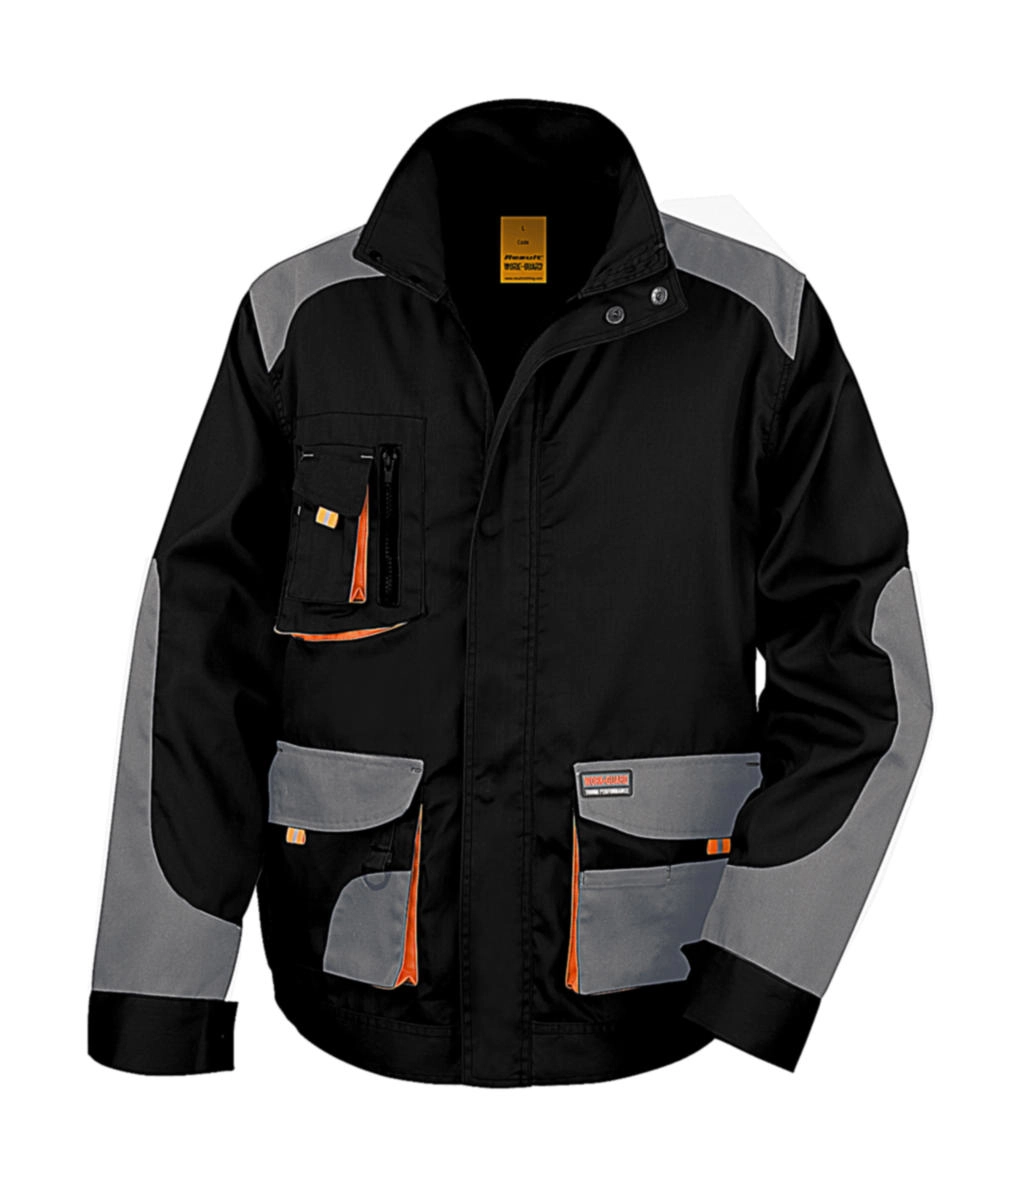 LITE Jacket zum Besticken und Bedrucken in der Farbe Black/Grey/Orange mit Ihren Logo, Schriftzug oder Motiv.